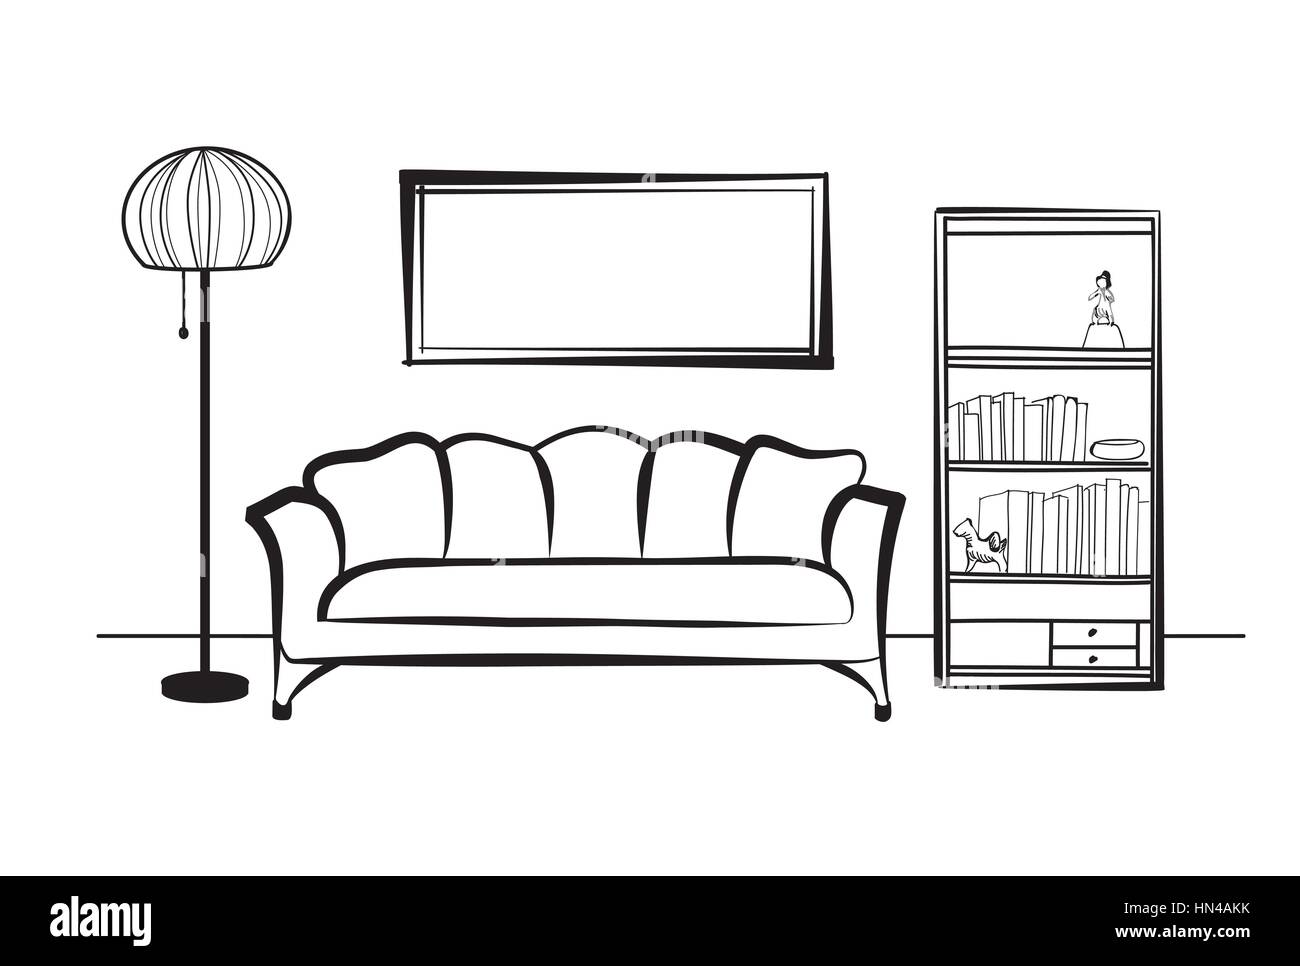 Inneneinrichtung mit Sofa, Stehlampe, Bücherregal, Bücher und Bild an der Wand. Wohnzimmer hnd Zeichnung Design. Stock Vektor